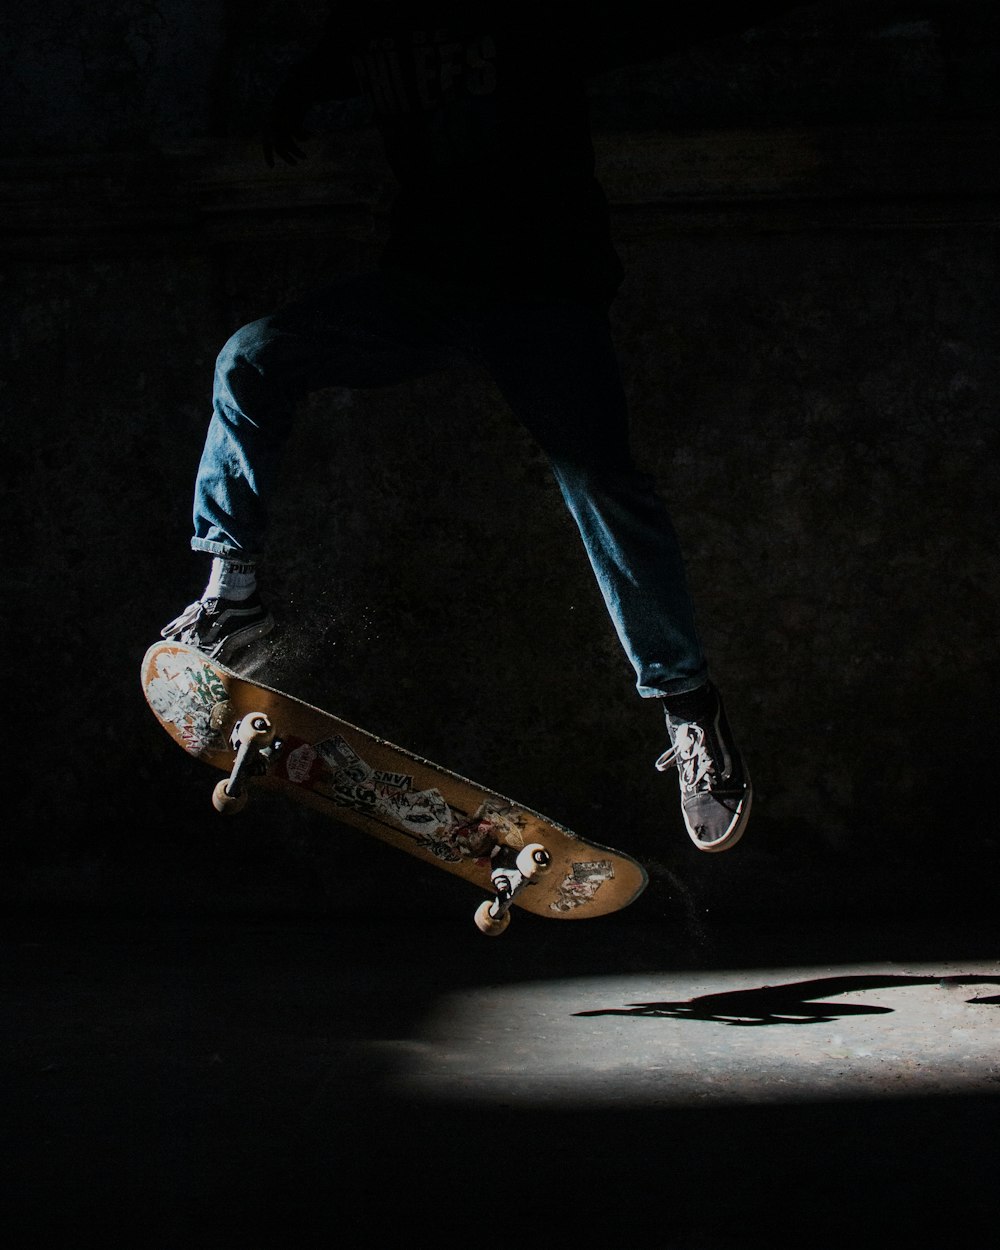 Persona a punto de hacer acrobacias usando una patineta marrón